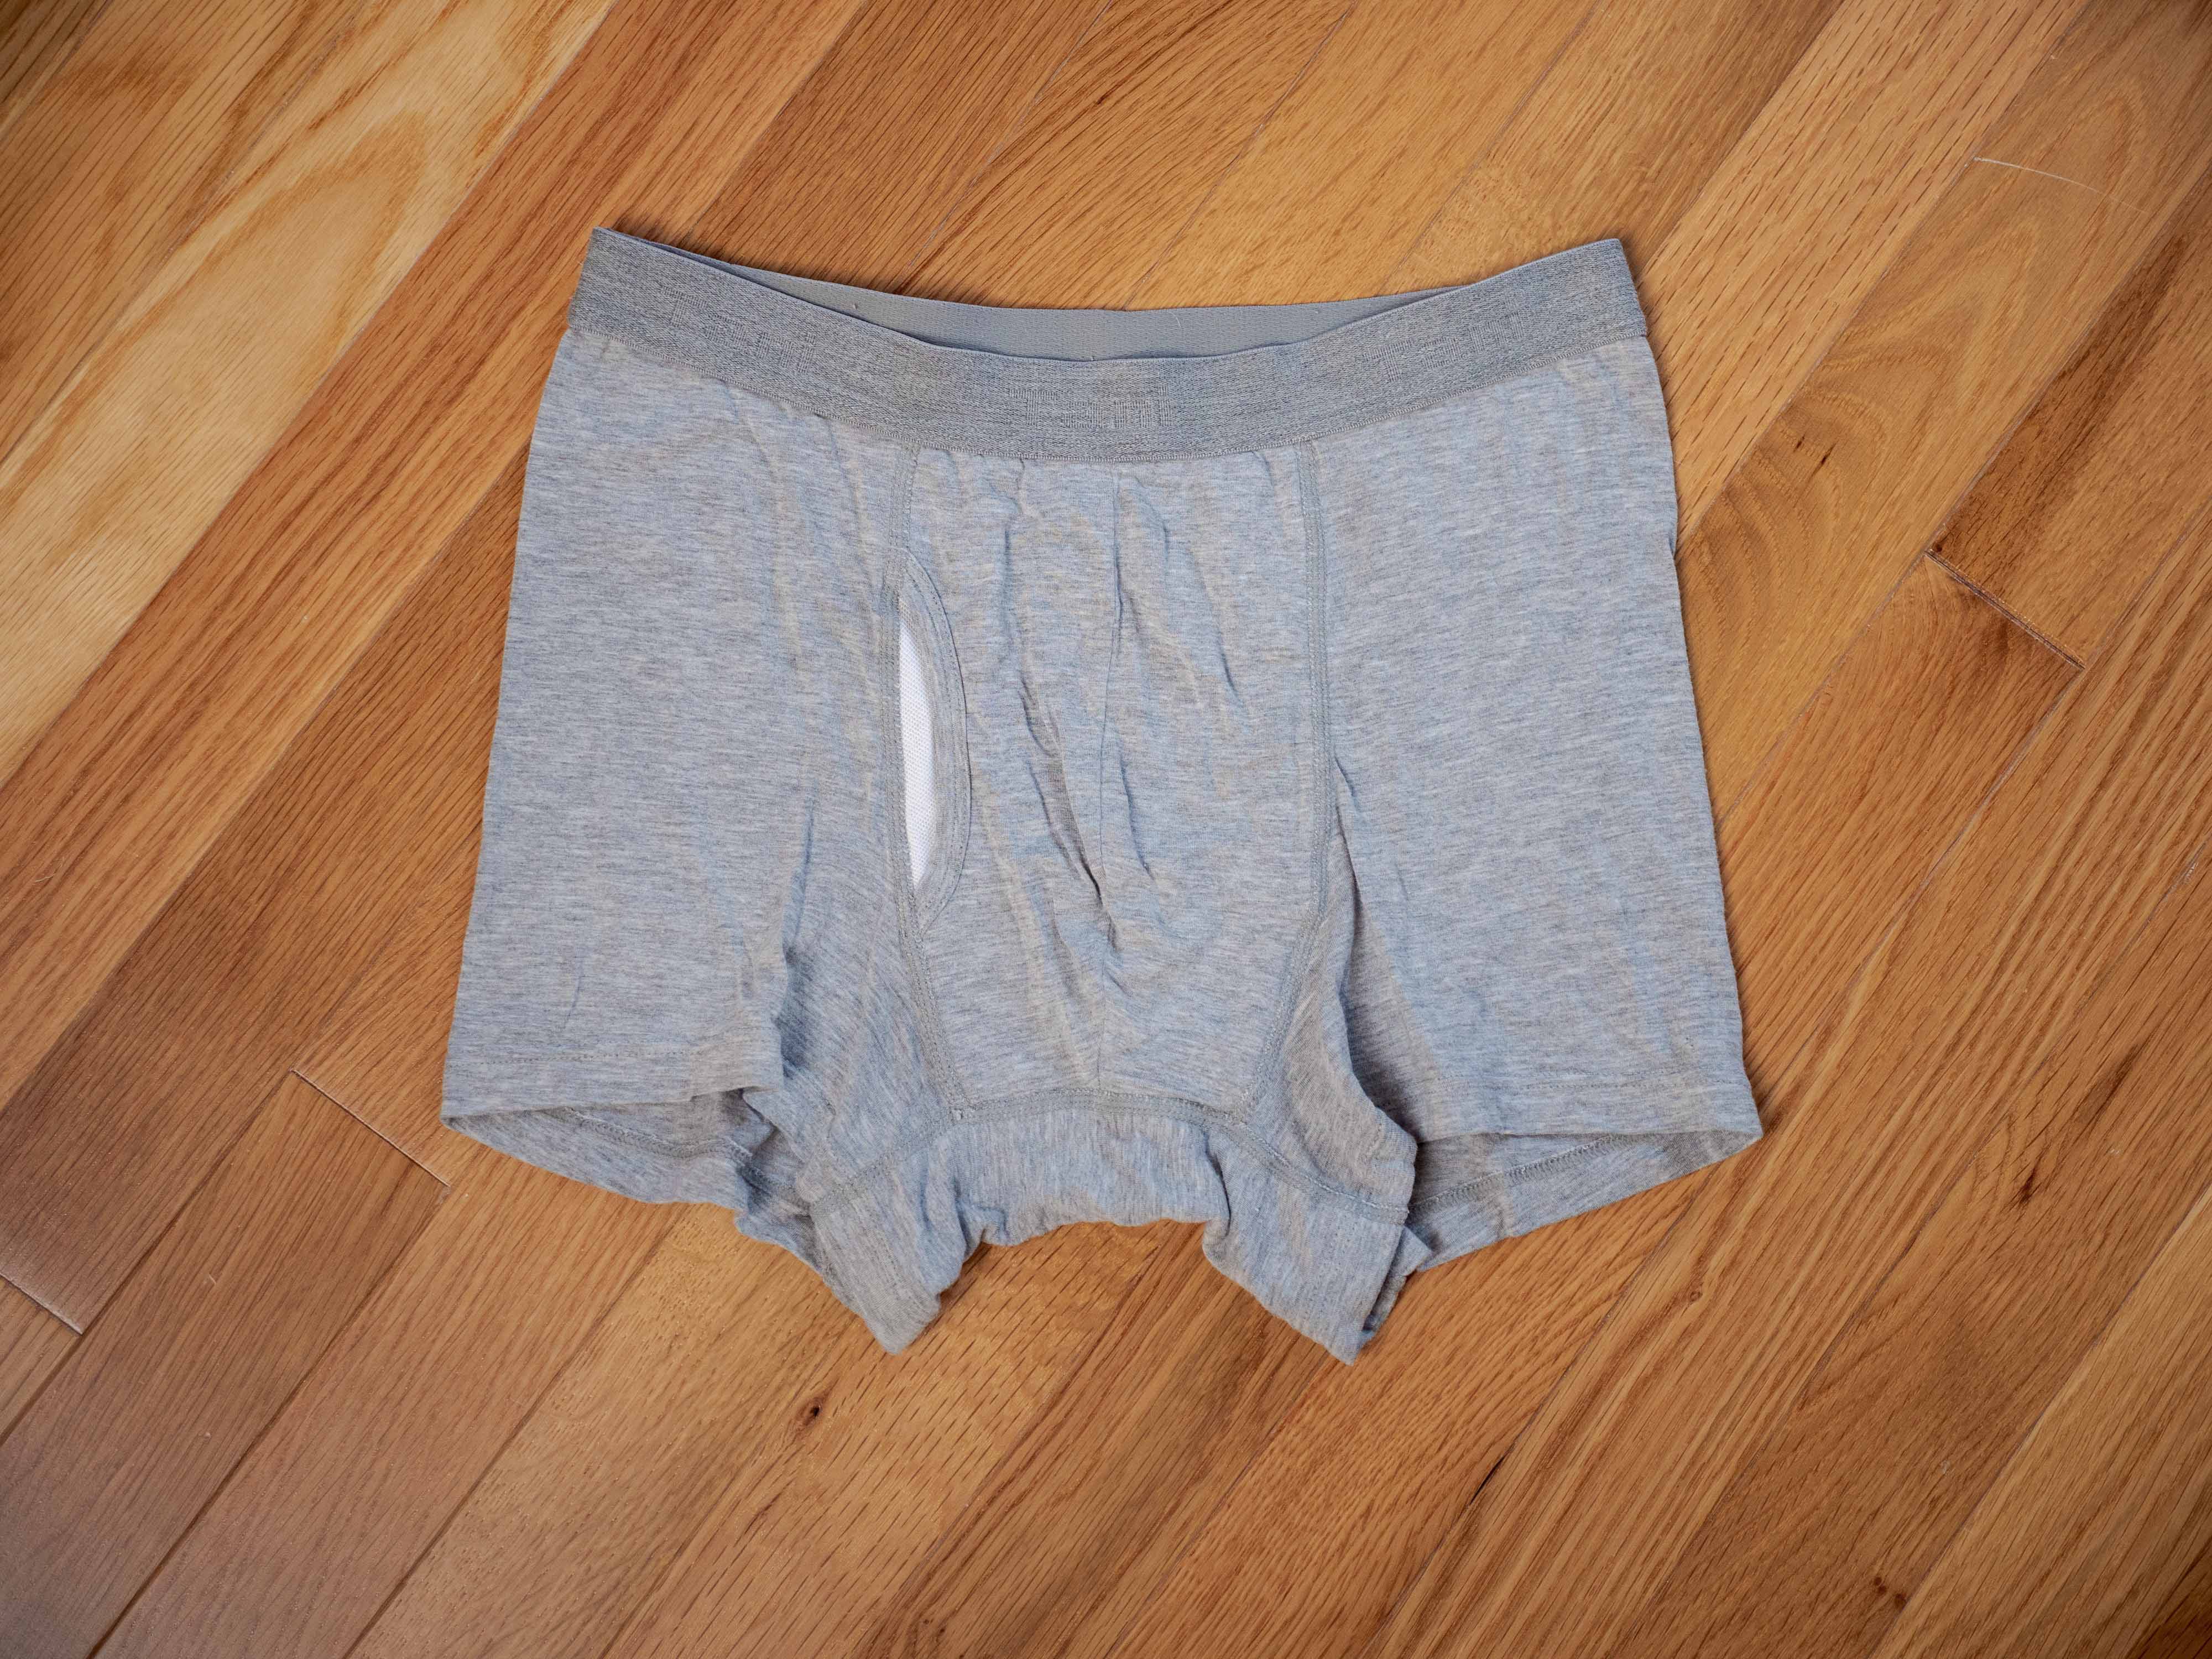 Tani pouch underwear